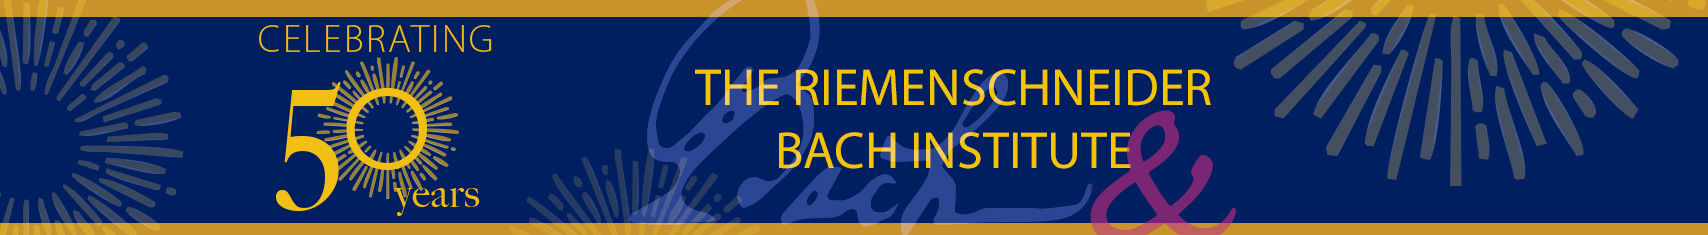 50th Anniversary of the Riemenschneider Bach Institute banner